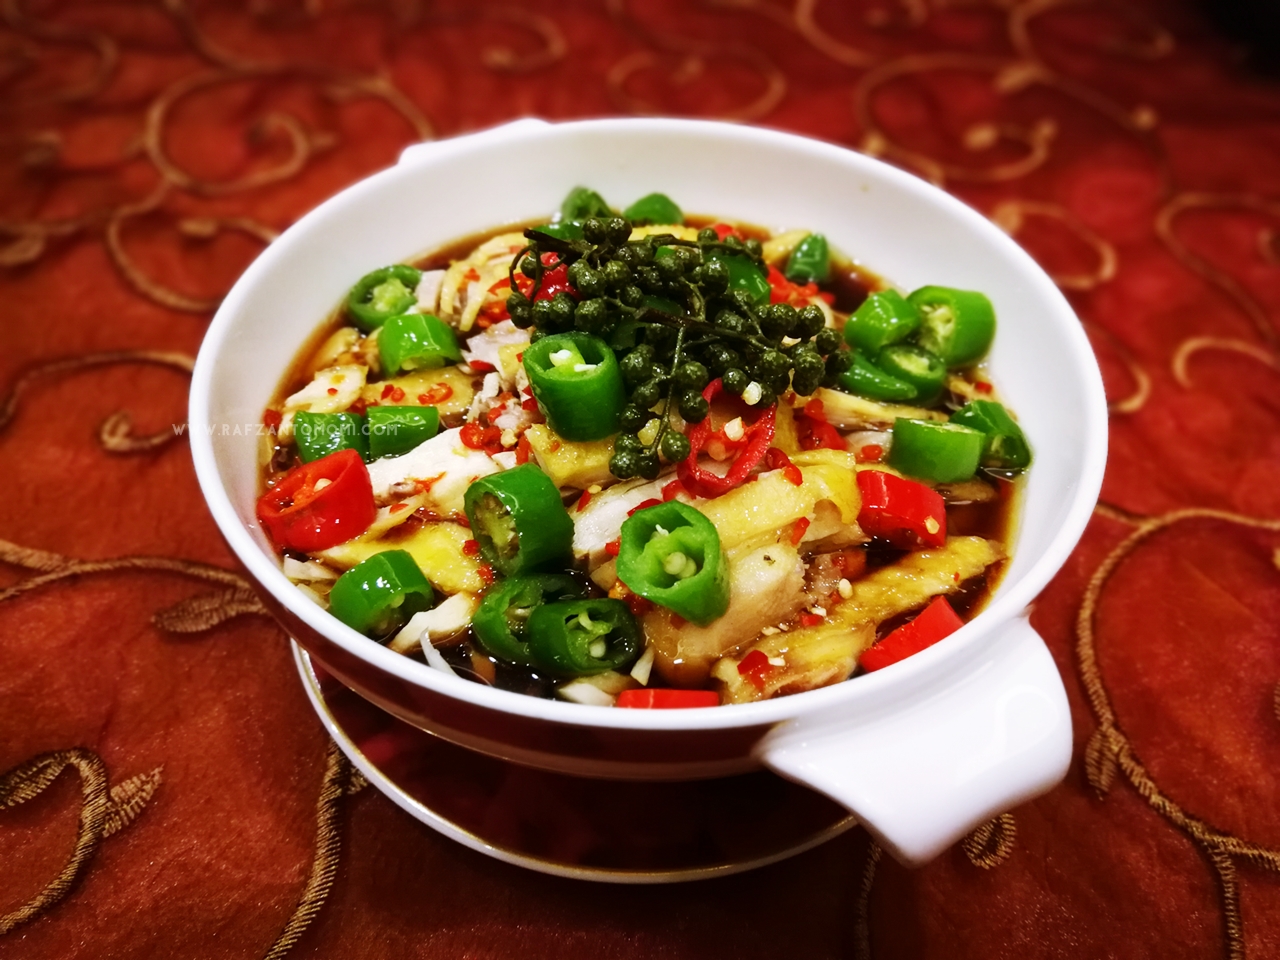 Sichuan 2018 Food Fiesta Di Hotel Dorsett Terpilih Bermula 4 Ogos Hingga 29 Ogos 2018